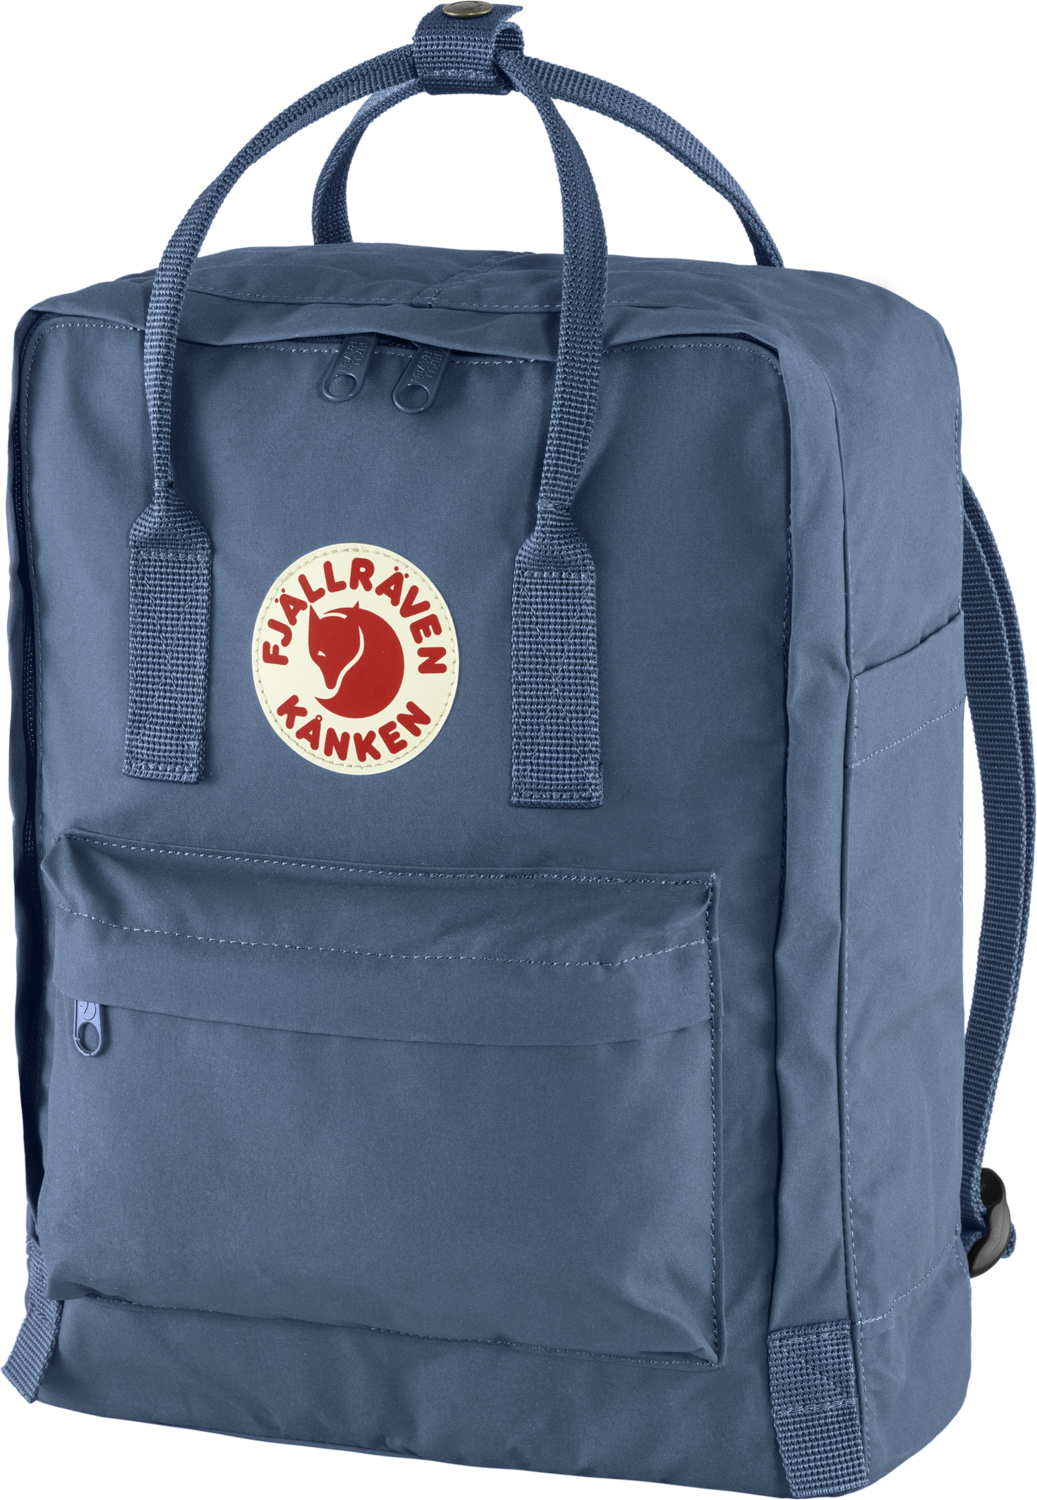 Kanken backpack royal blue